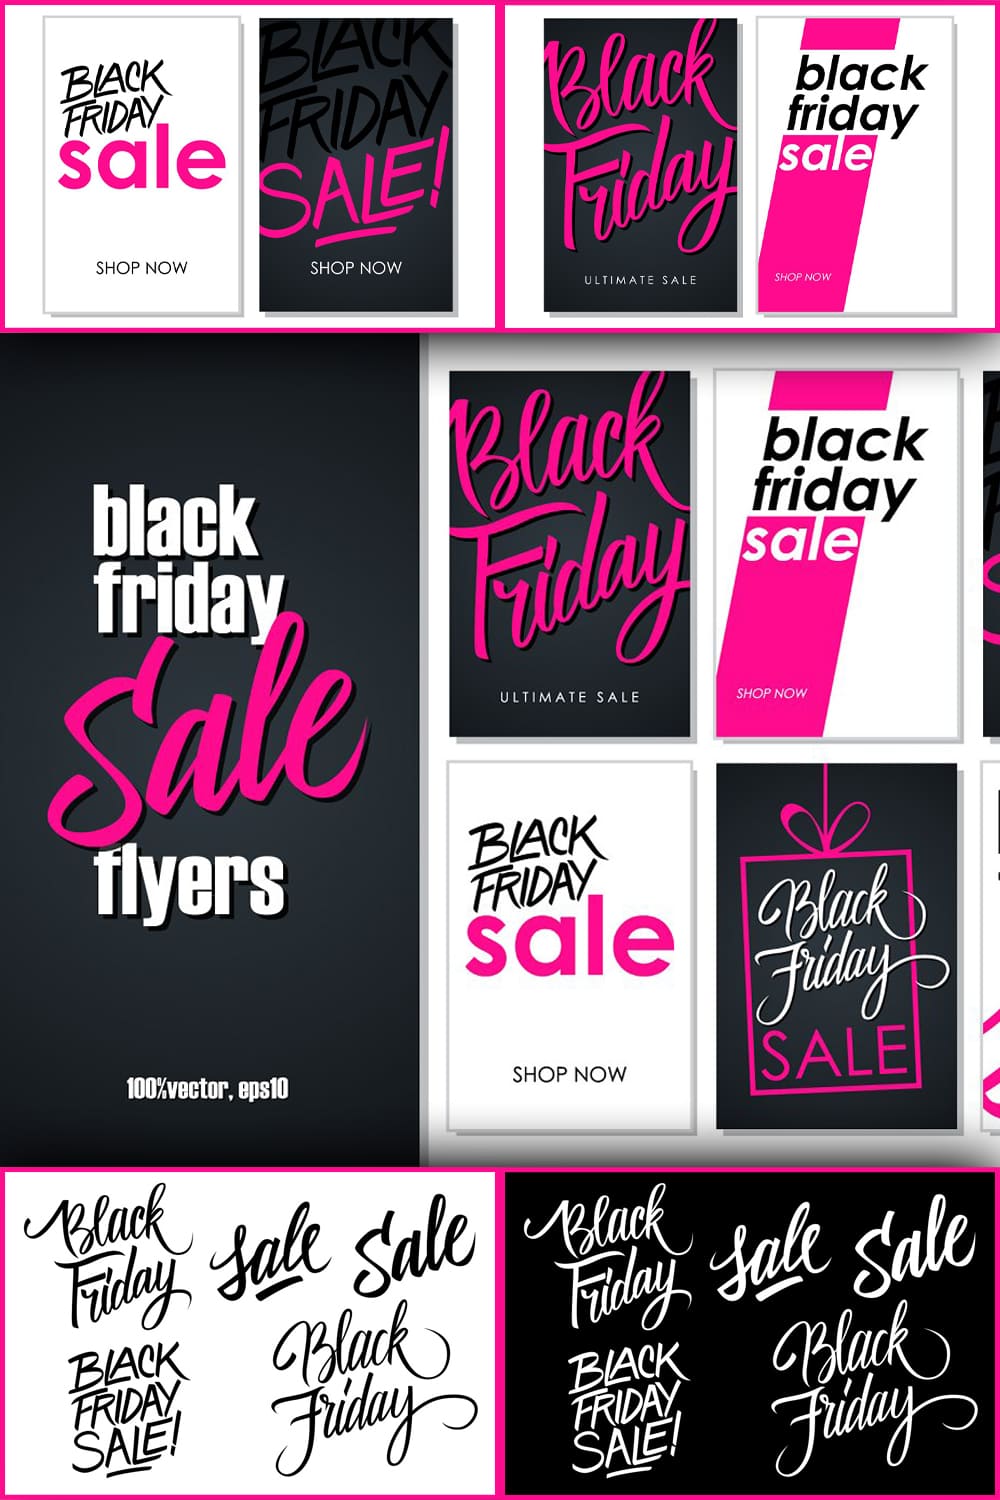 Black Friday Sale Flyers - Pinterest.